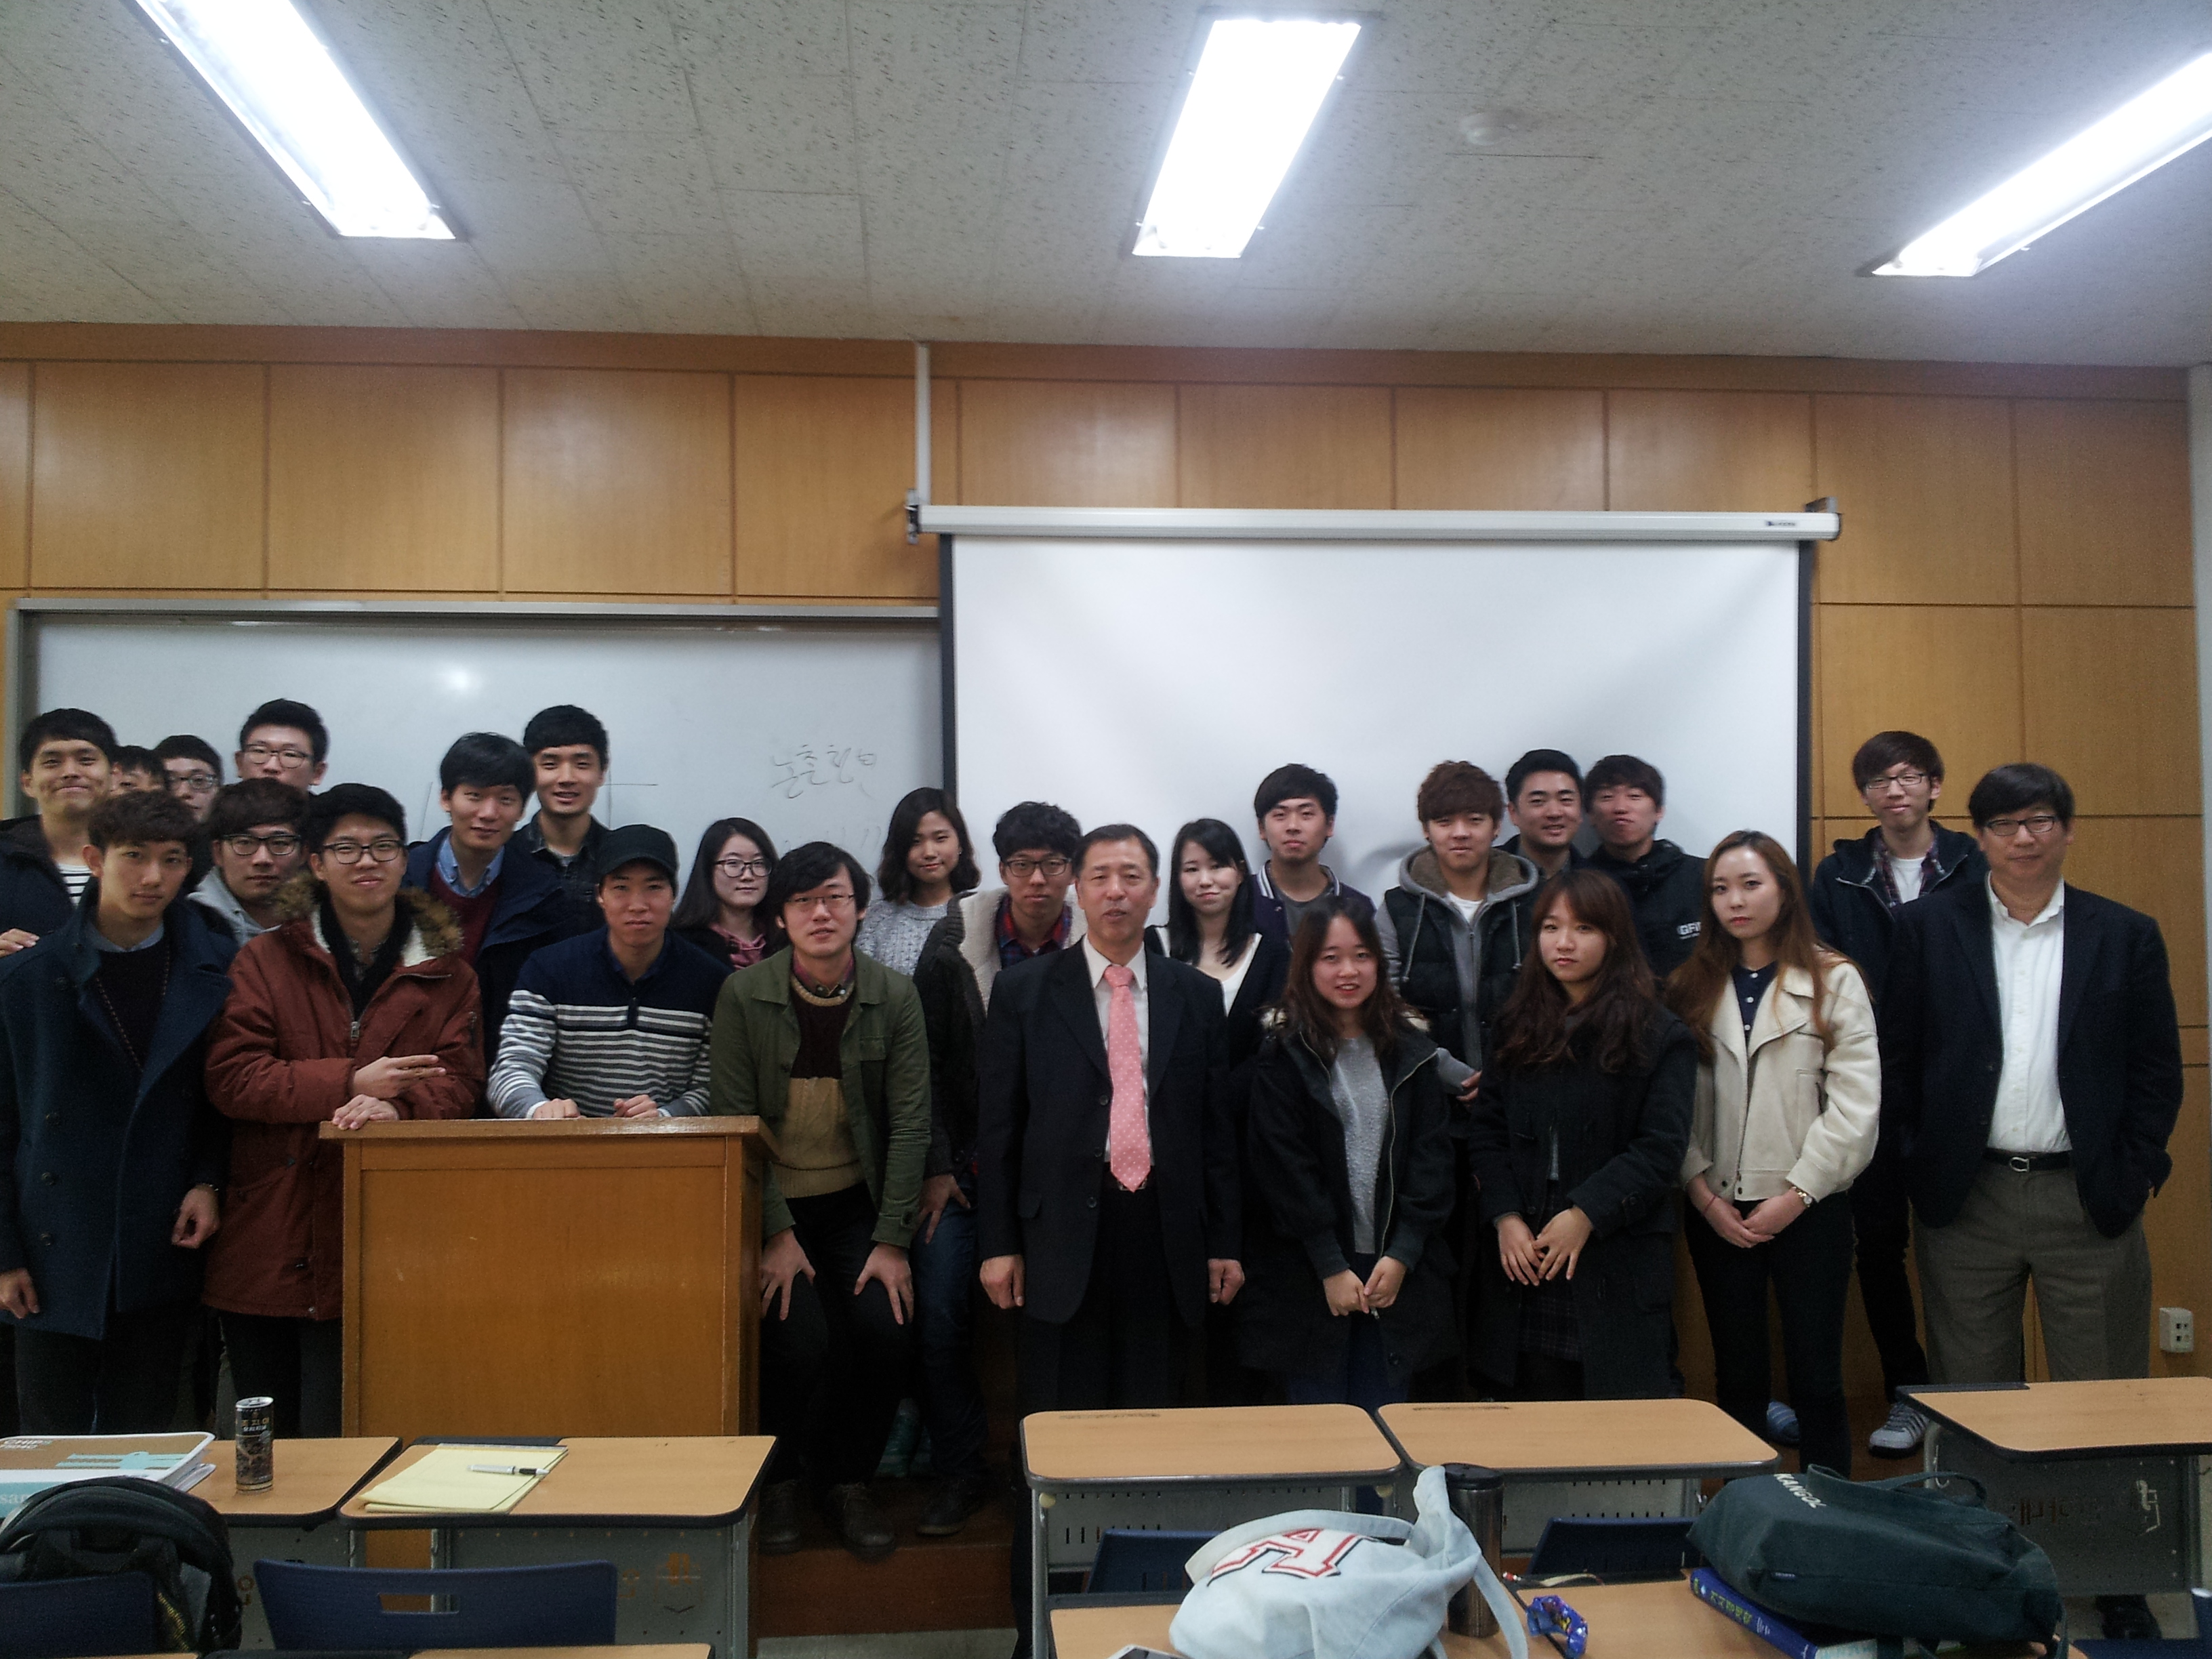 사본 - 인하대학특강 단체사진20141112.jpg